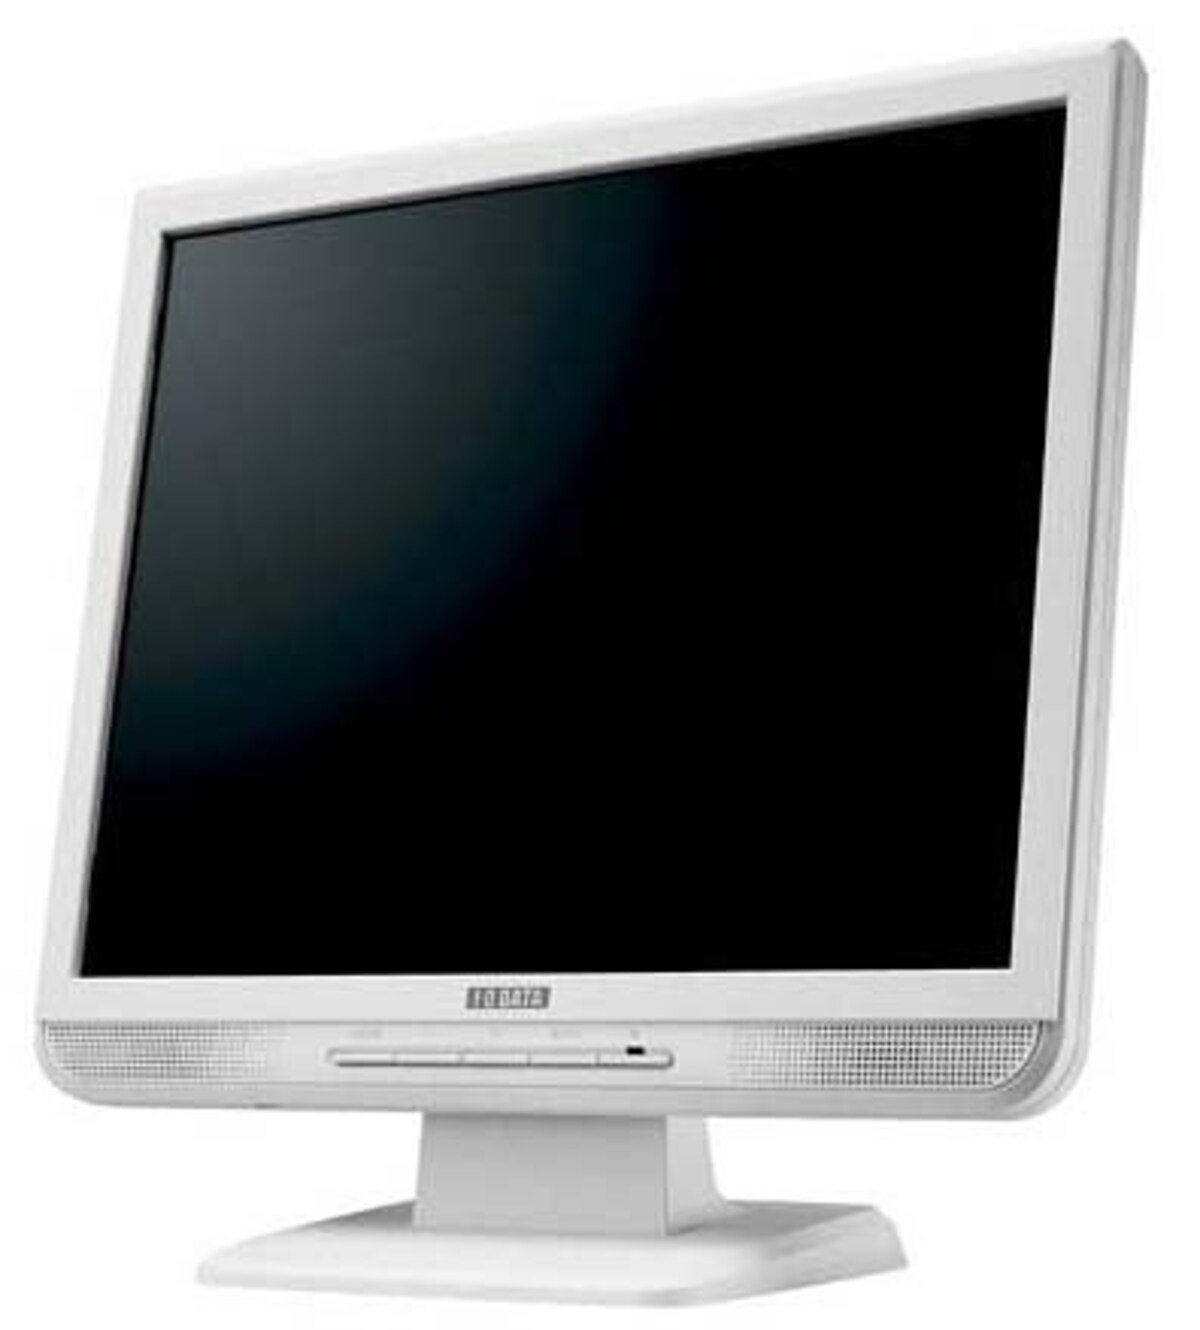 I-O DATA 17インチ液晶ディスプレイ LCD-AD174GW ホワイト (SXGA, デジタル&アナログ, スピーカー内蔵 )